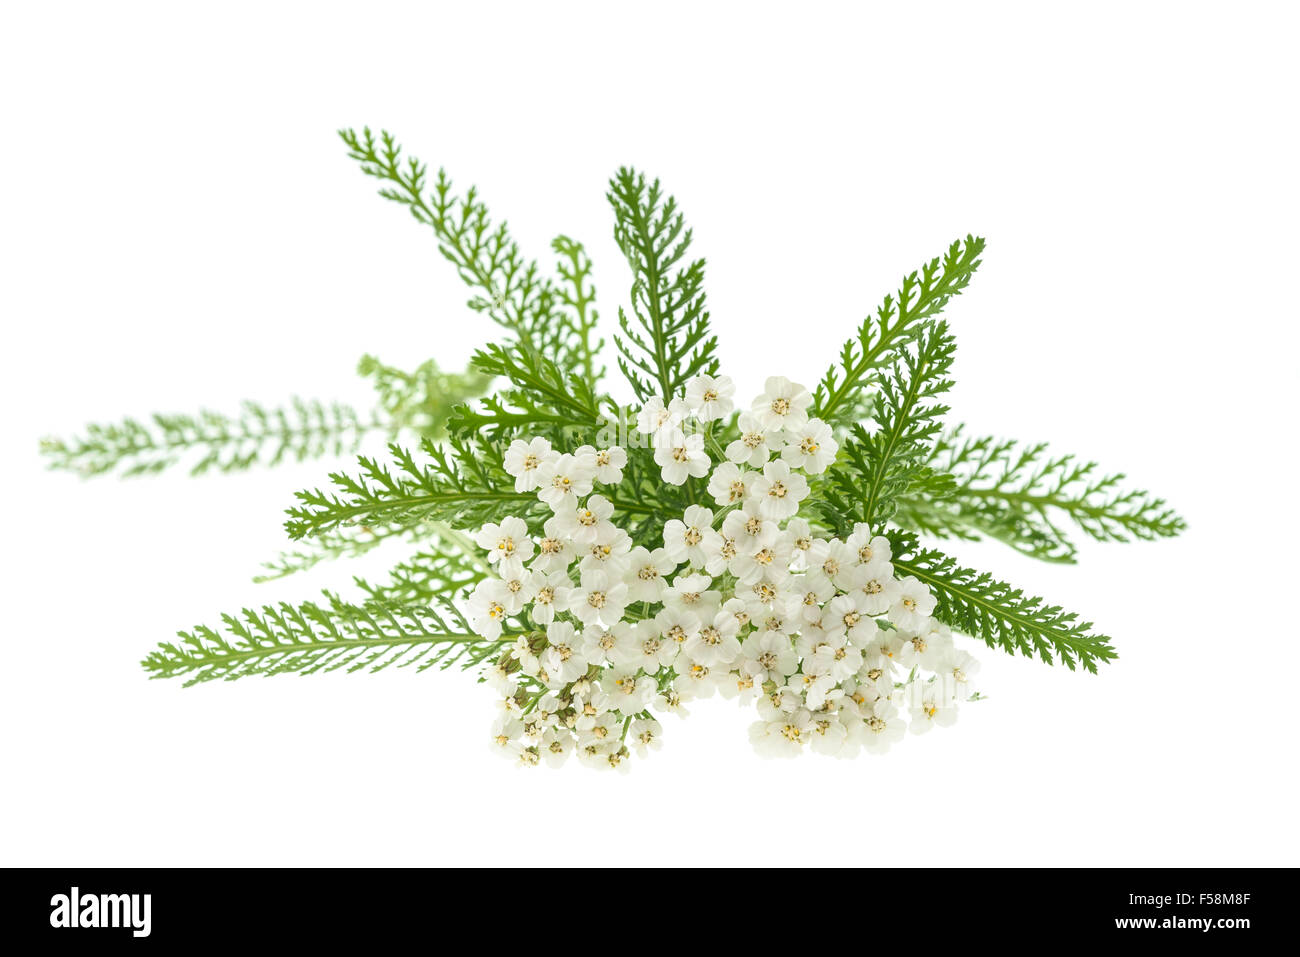 White yarrow flowers isolated on white background. Stock Photo